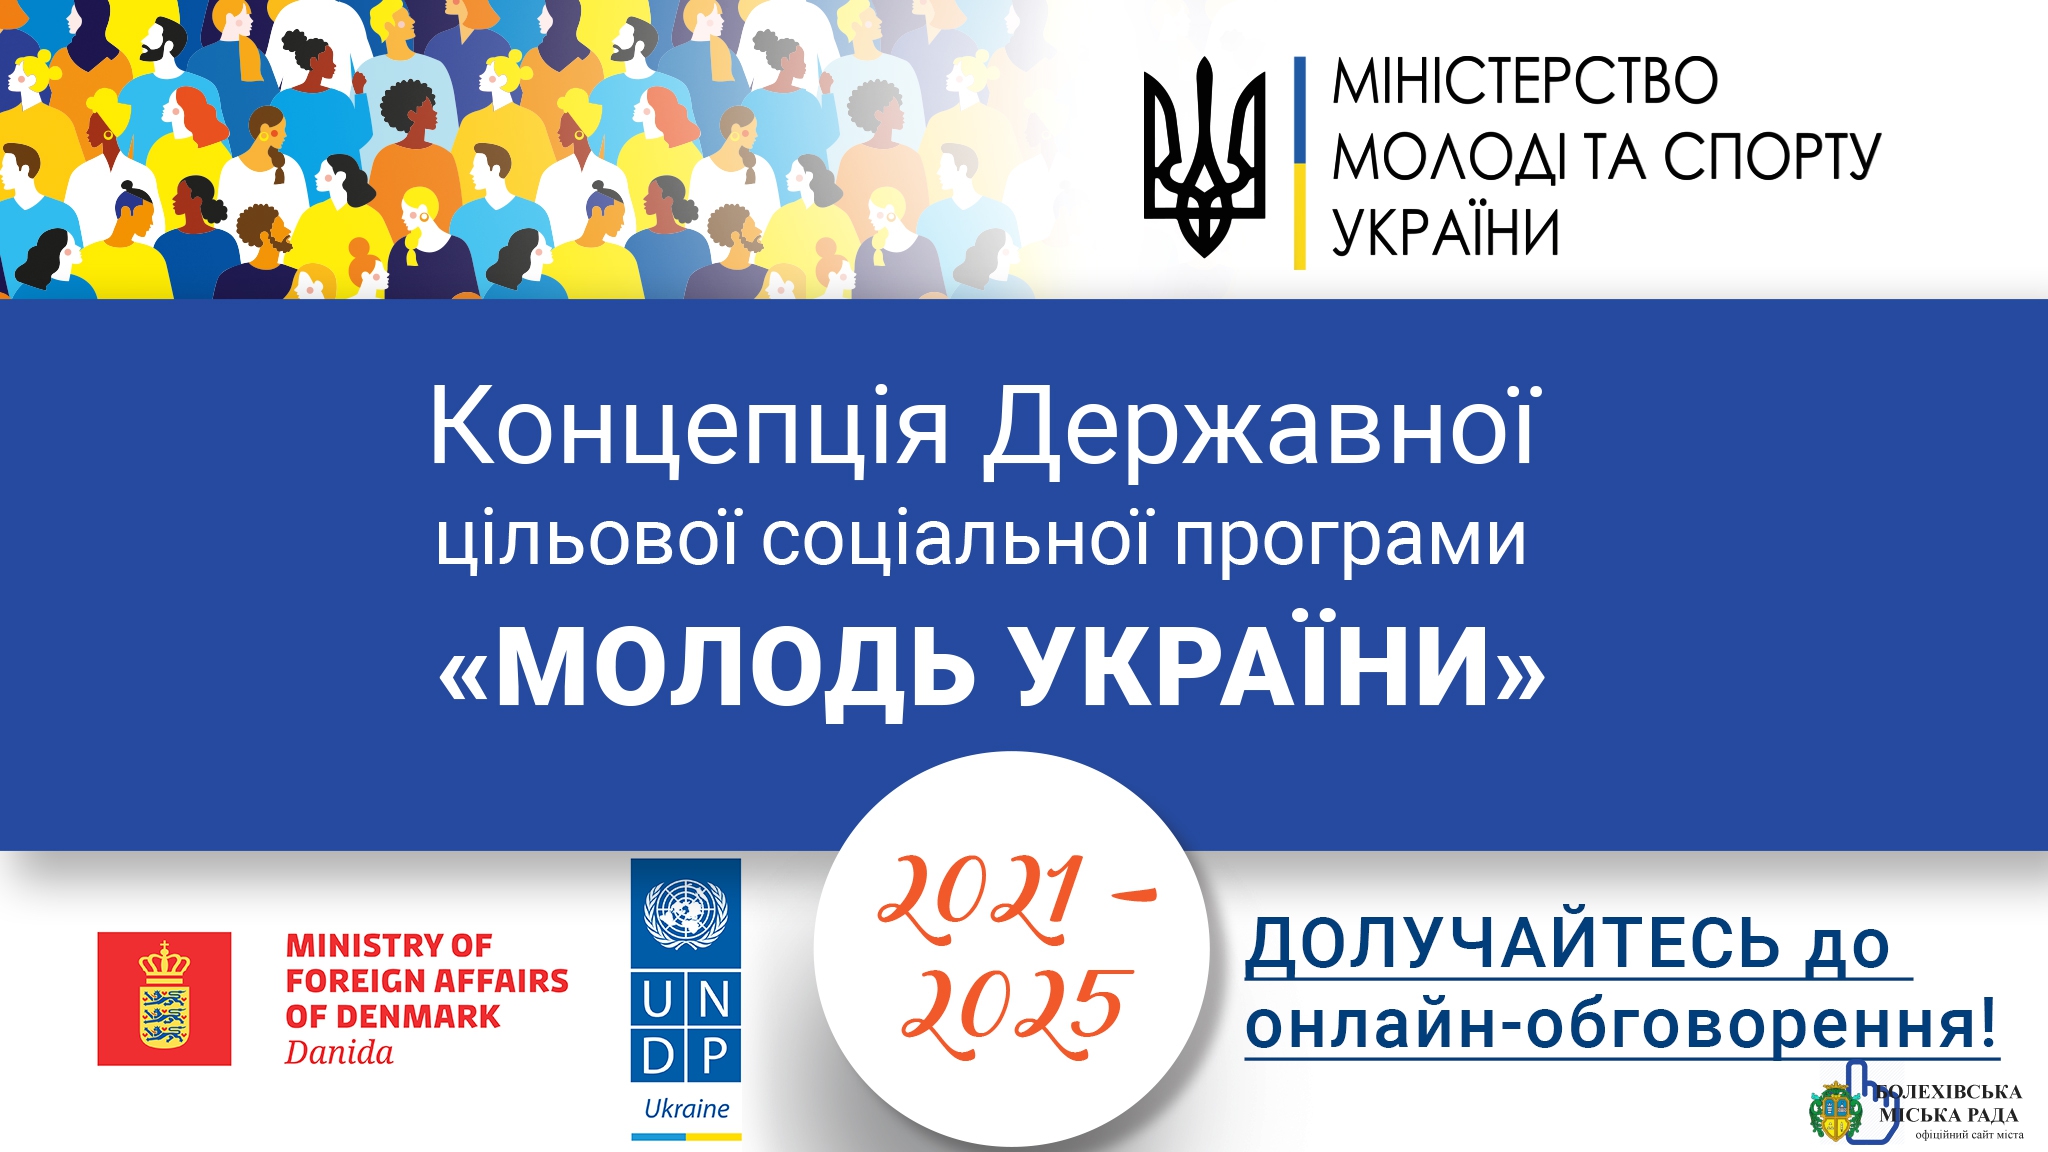 Розпочинаються громадські обговорення проєкту Концепції Державної цільової соціальної програми «Молодь України» на 2021-2025 роки